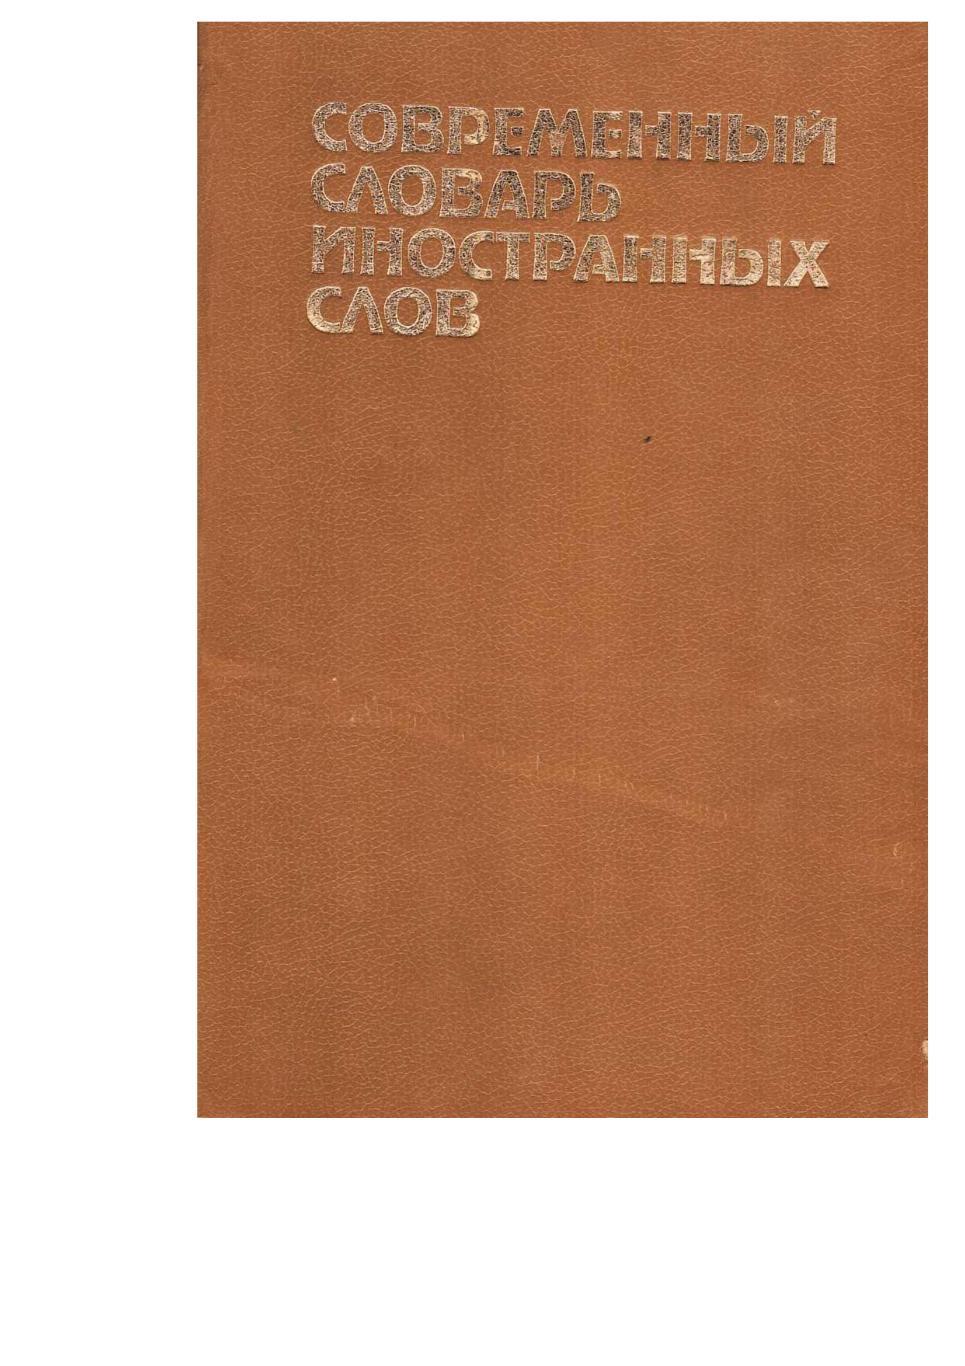 Современный словарь синонимов Иностранных слов. – Спб., 1994.